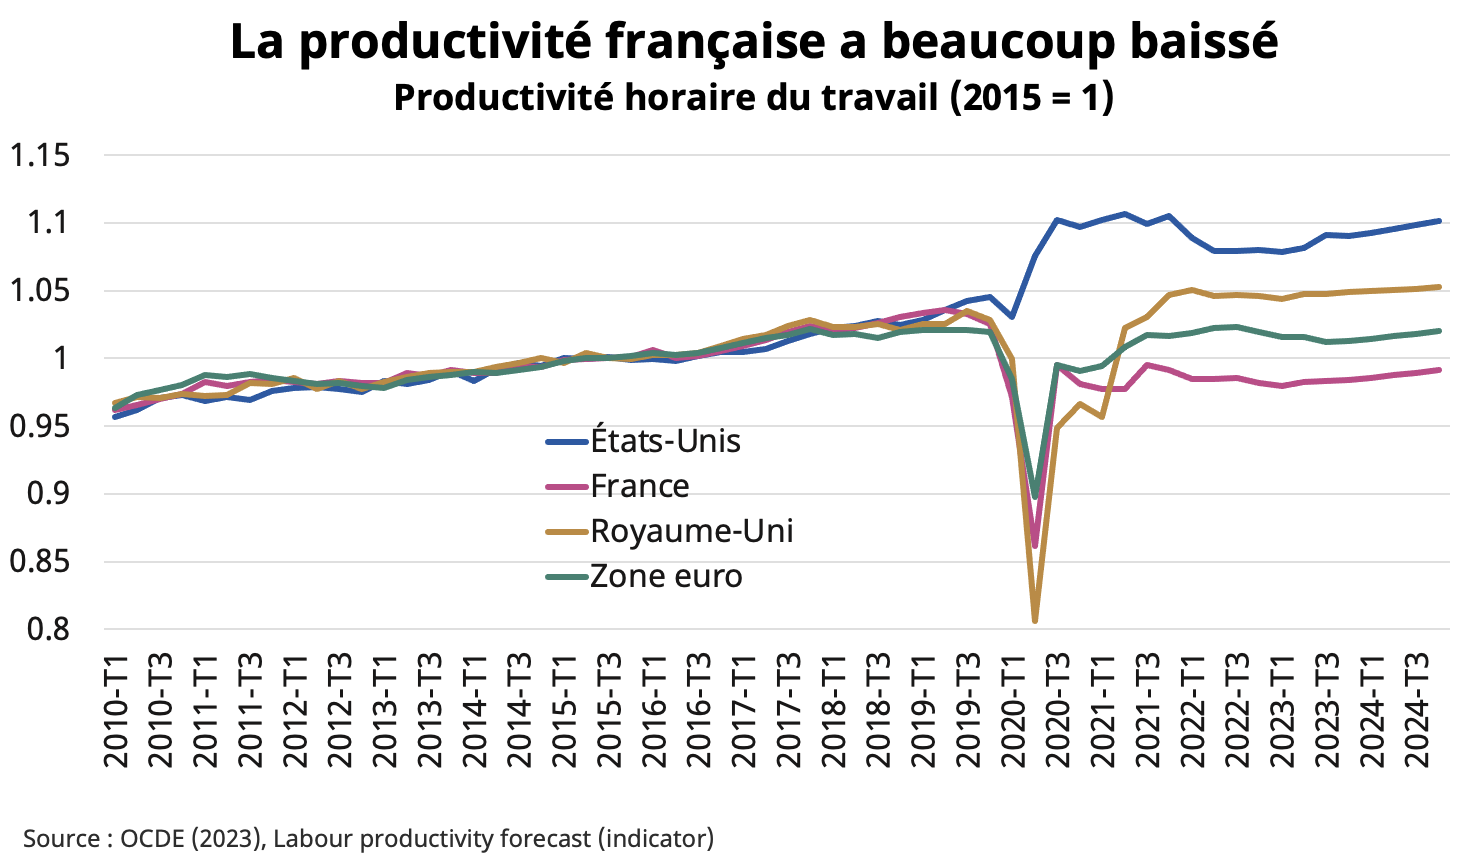 Ce graphique représente l’évolution, puis les prévisions, de la productivité horaire du travail aux États-Unis, en France, au Royaume-Uni et en zone euro entre le premier trimestre 2010 et le troisième trimestre 2024. L'indicateur retenu est le “Labour productivity forecast” de l’OCDE.